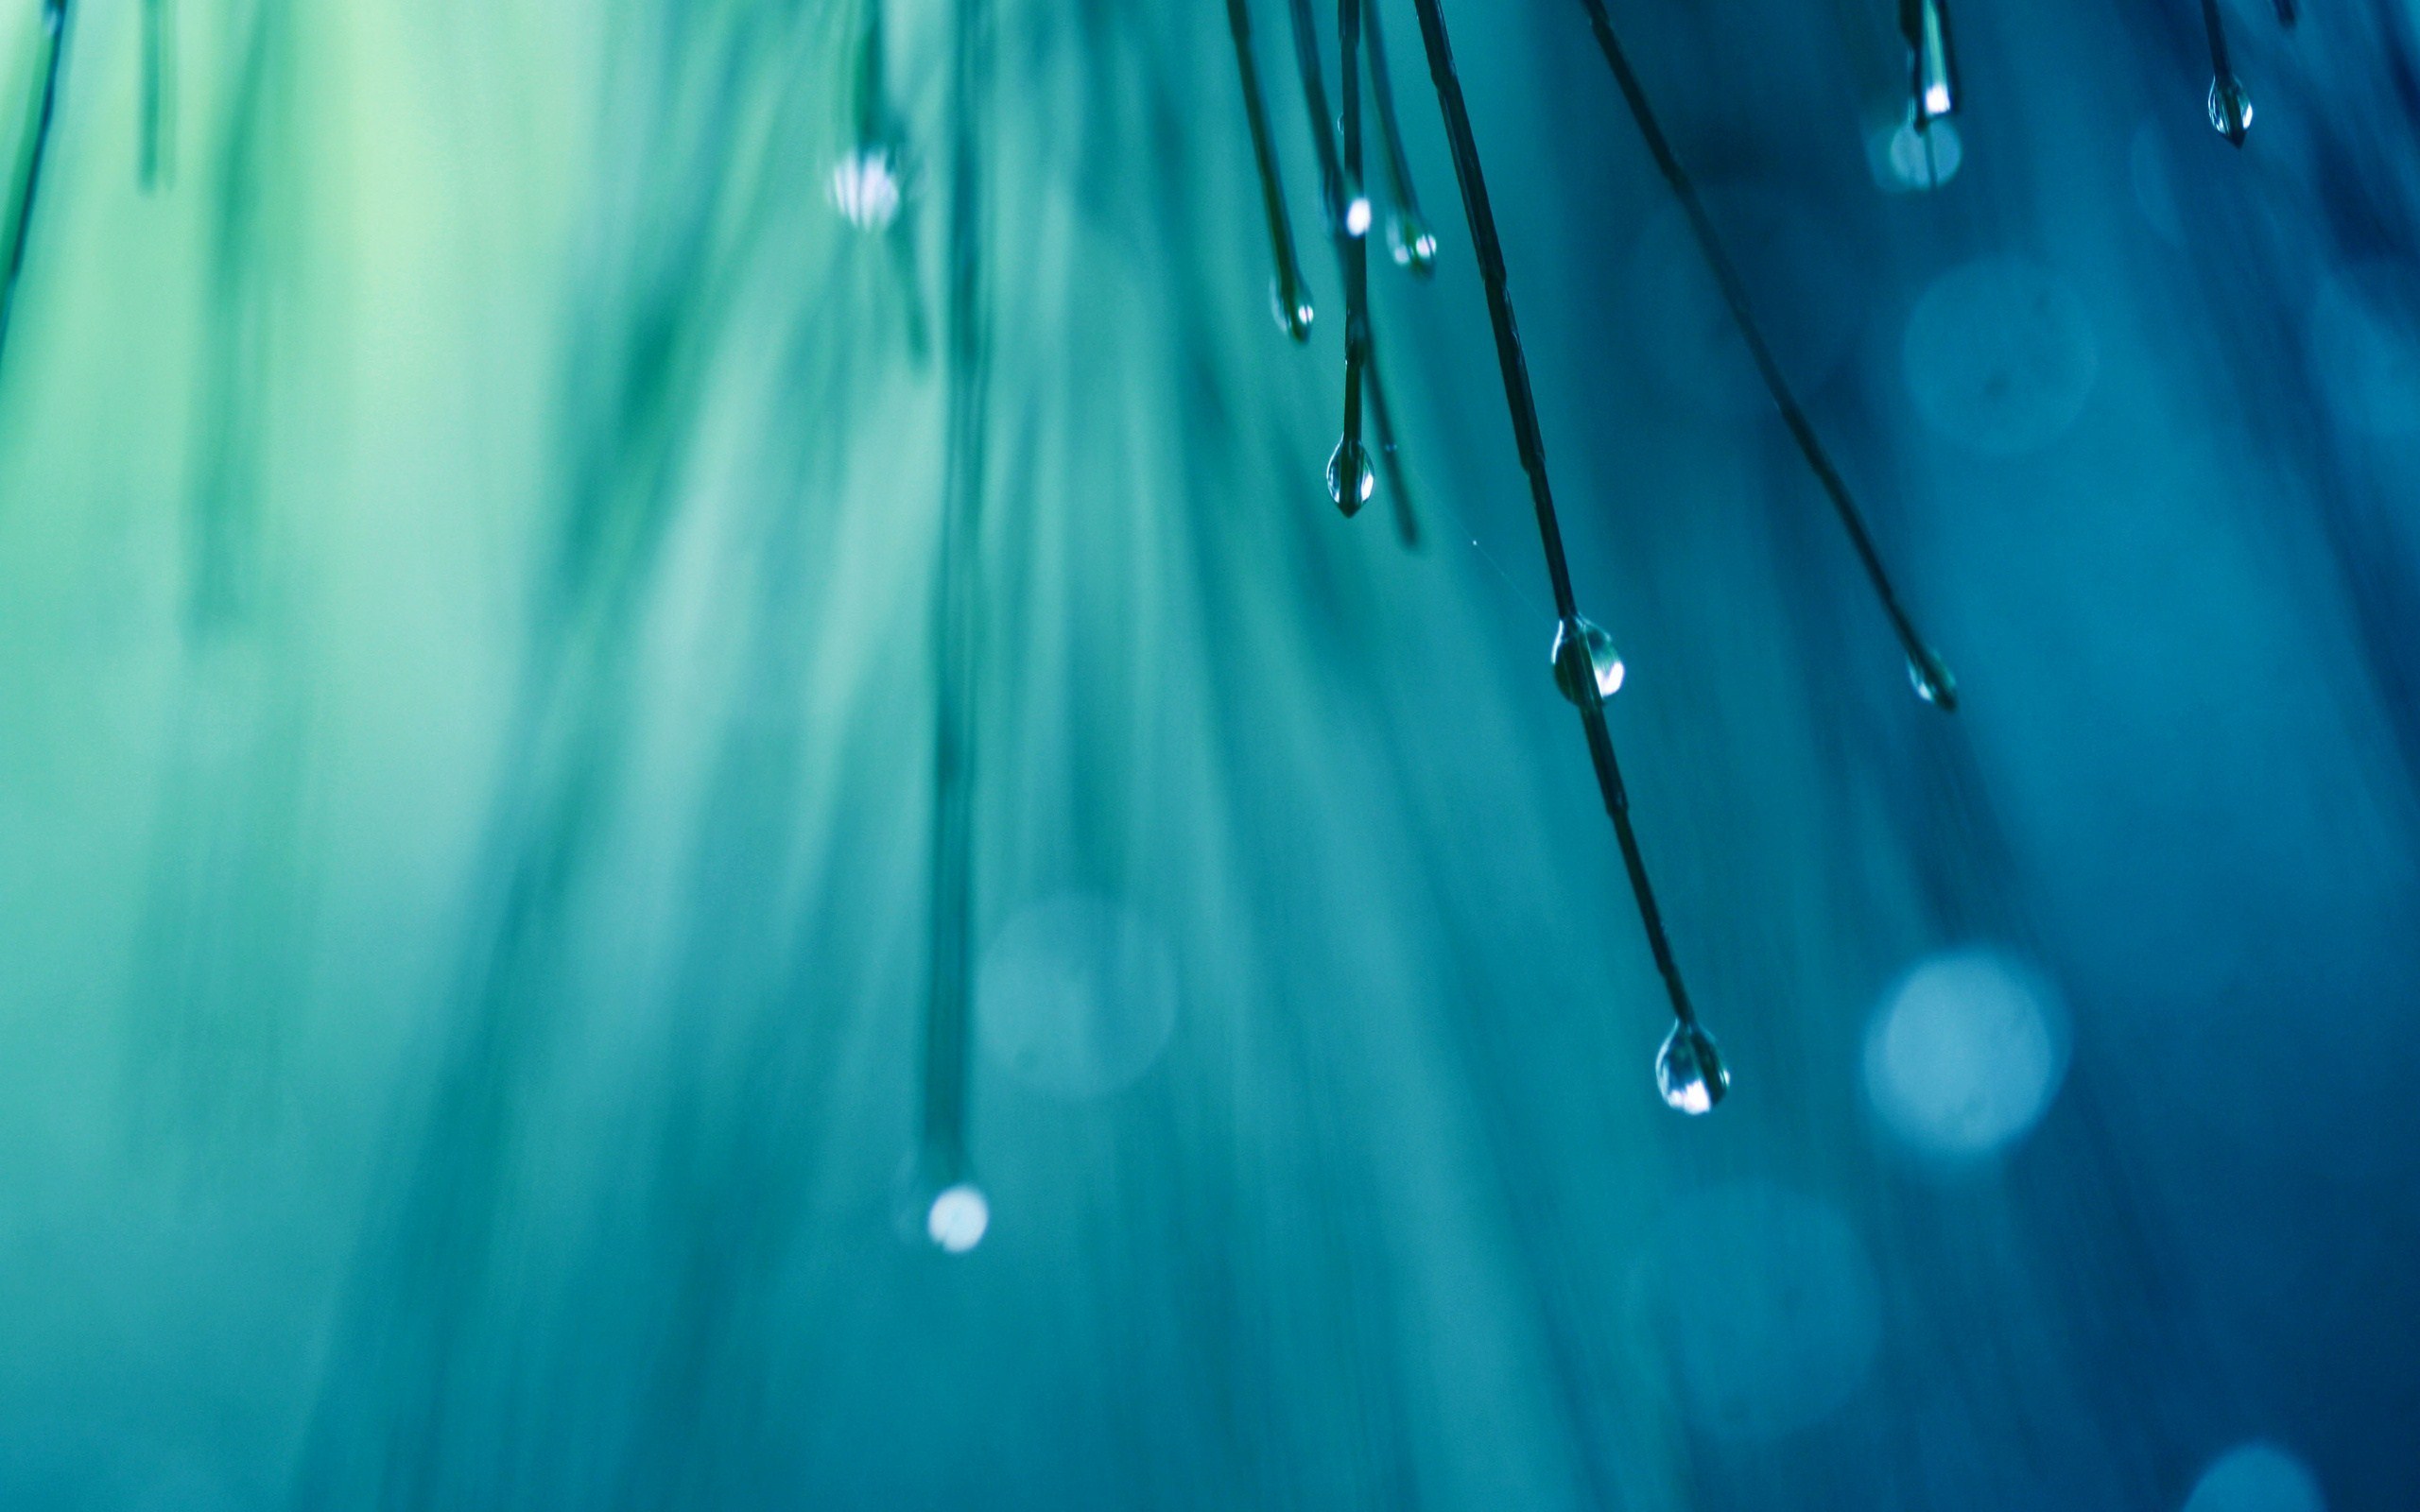 rain drops live wallpapers,blue,water,green,aqua,moisture